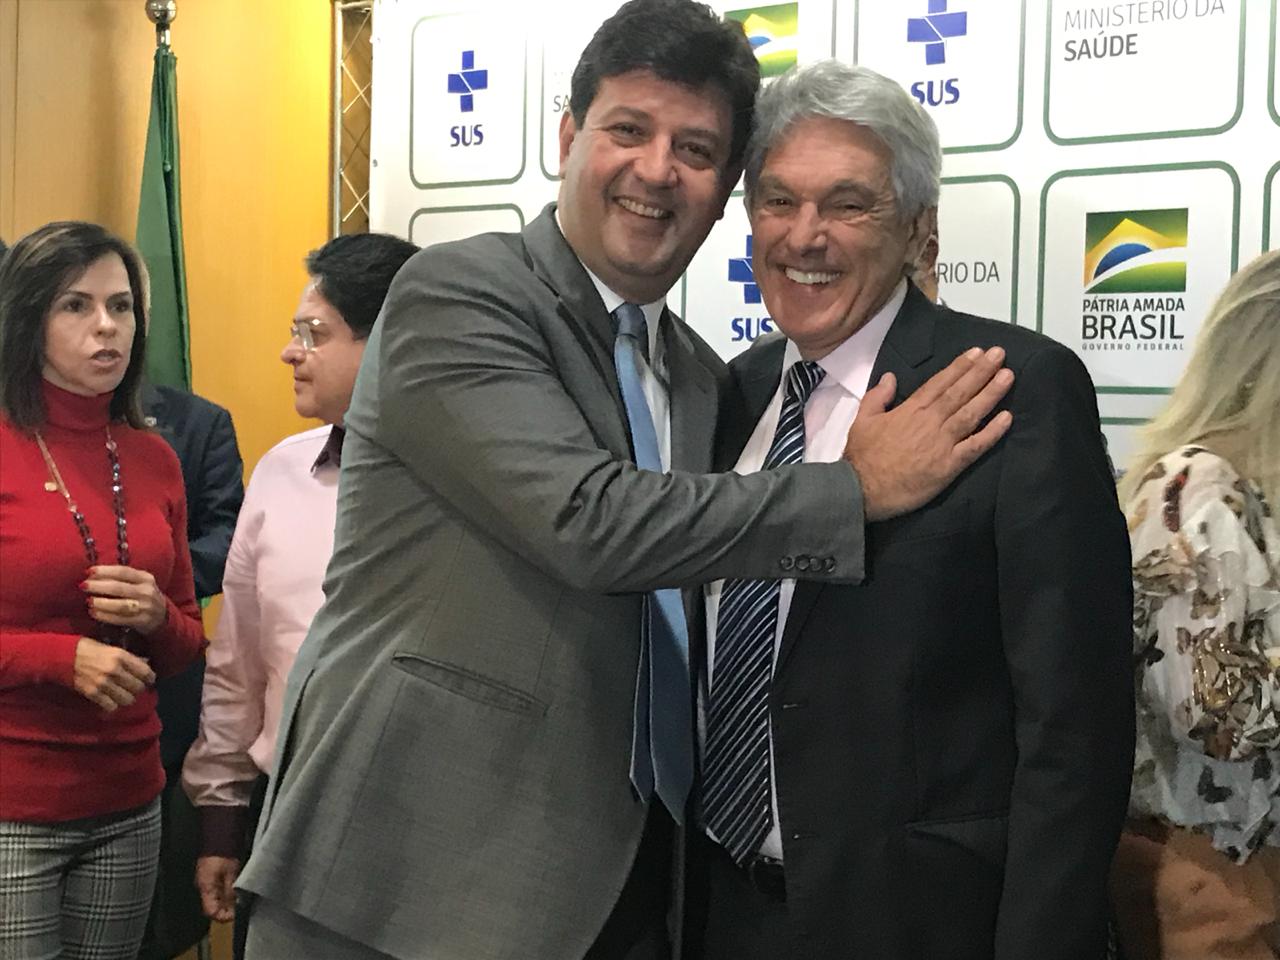 Ministro da Saúde confirma empenho para construção do Hospital de São Gonçalo